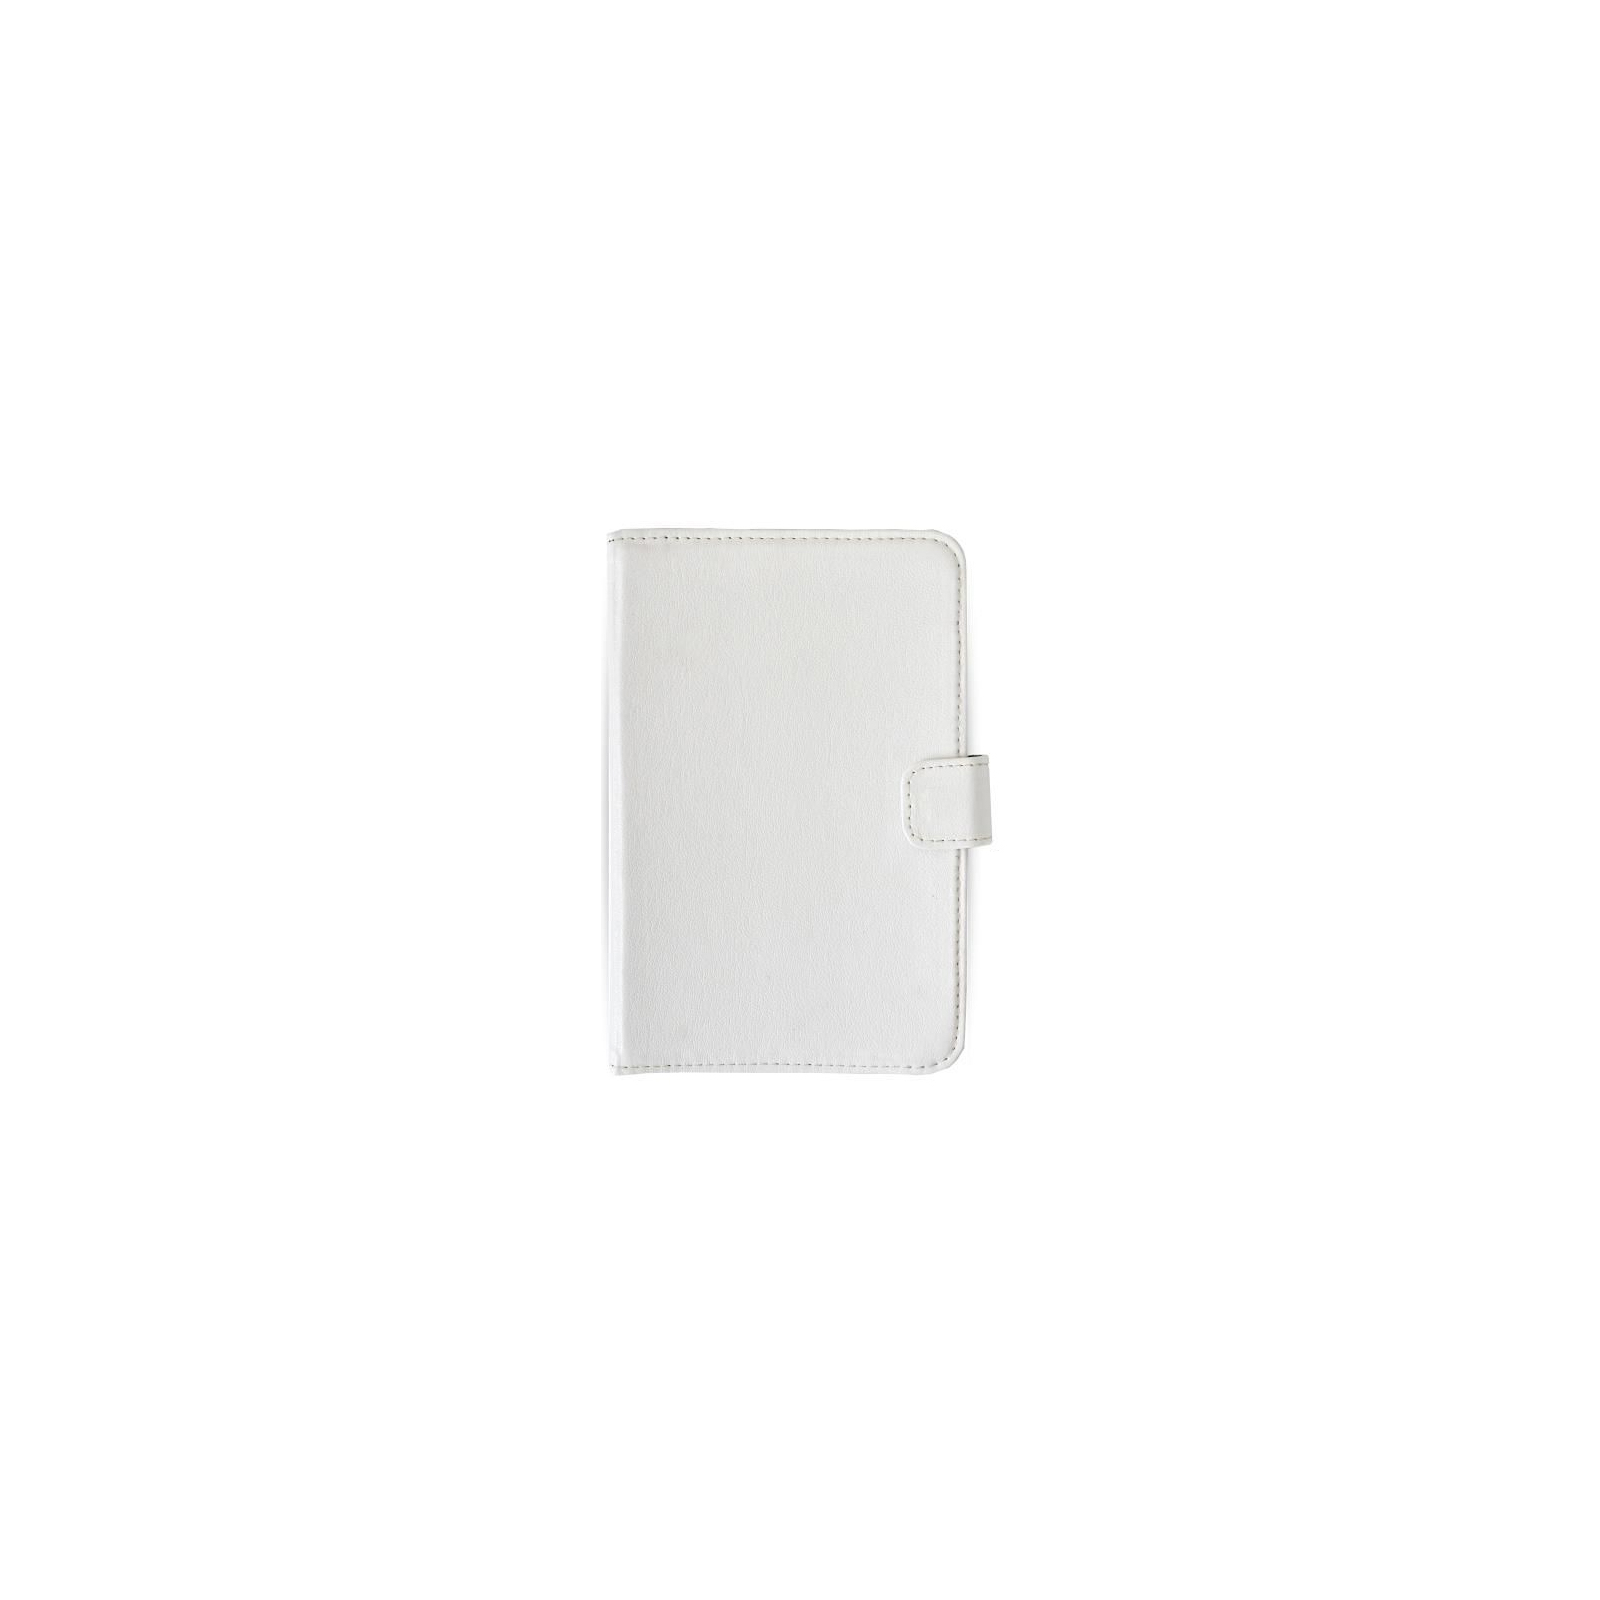 Чехол для планшета Vento 7 Advanced - white (07Р031W)